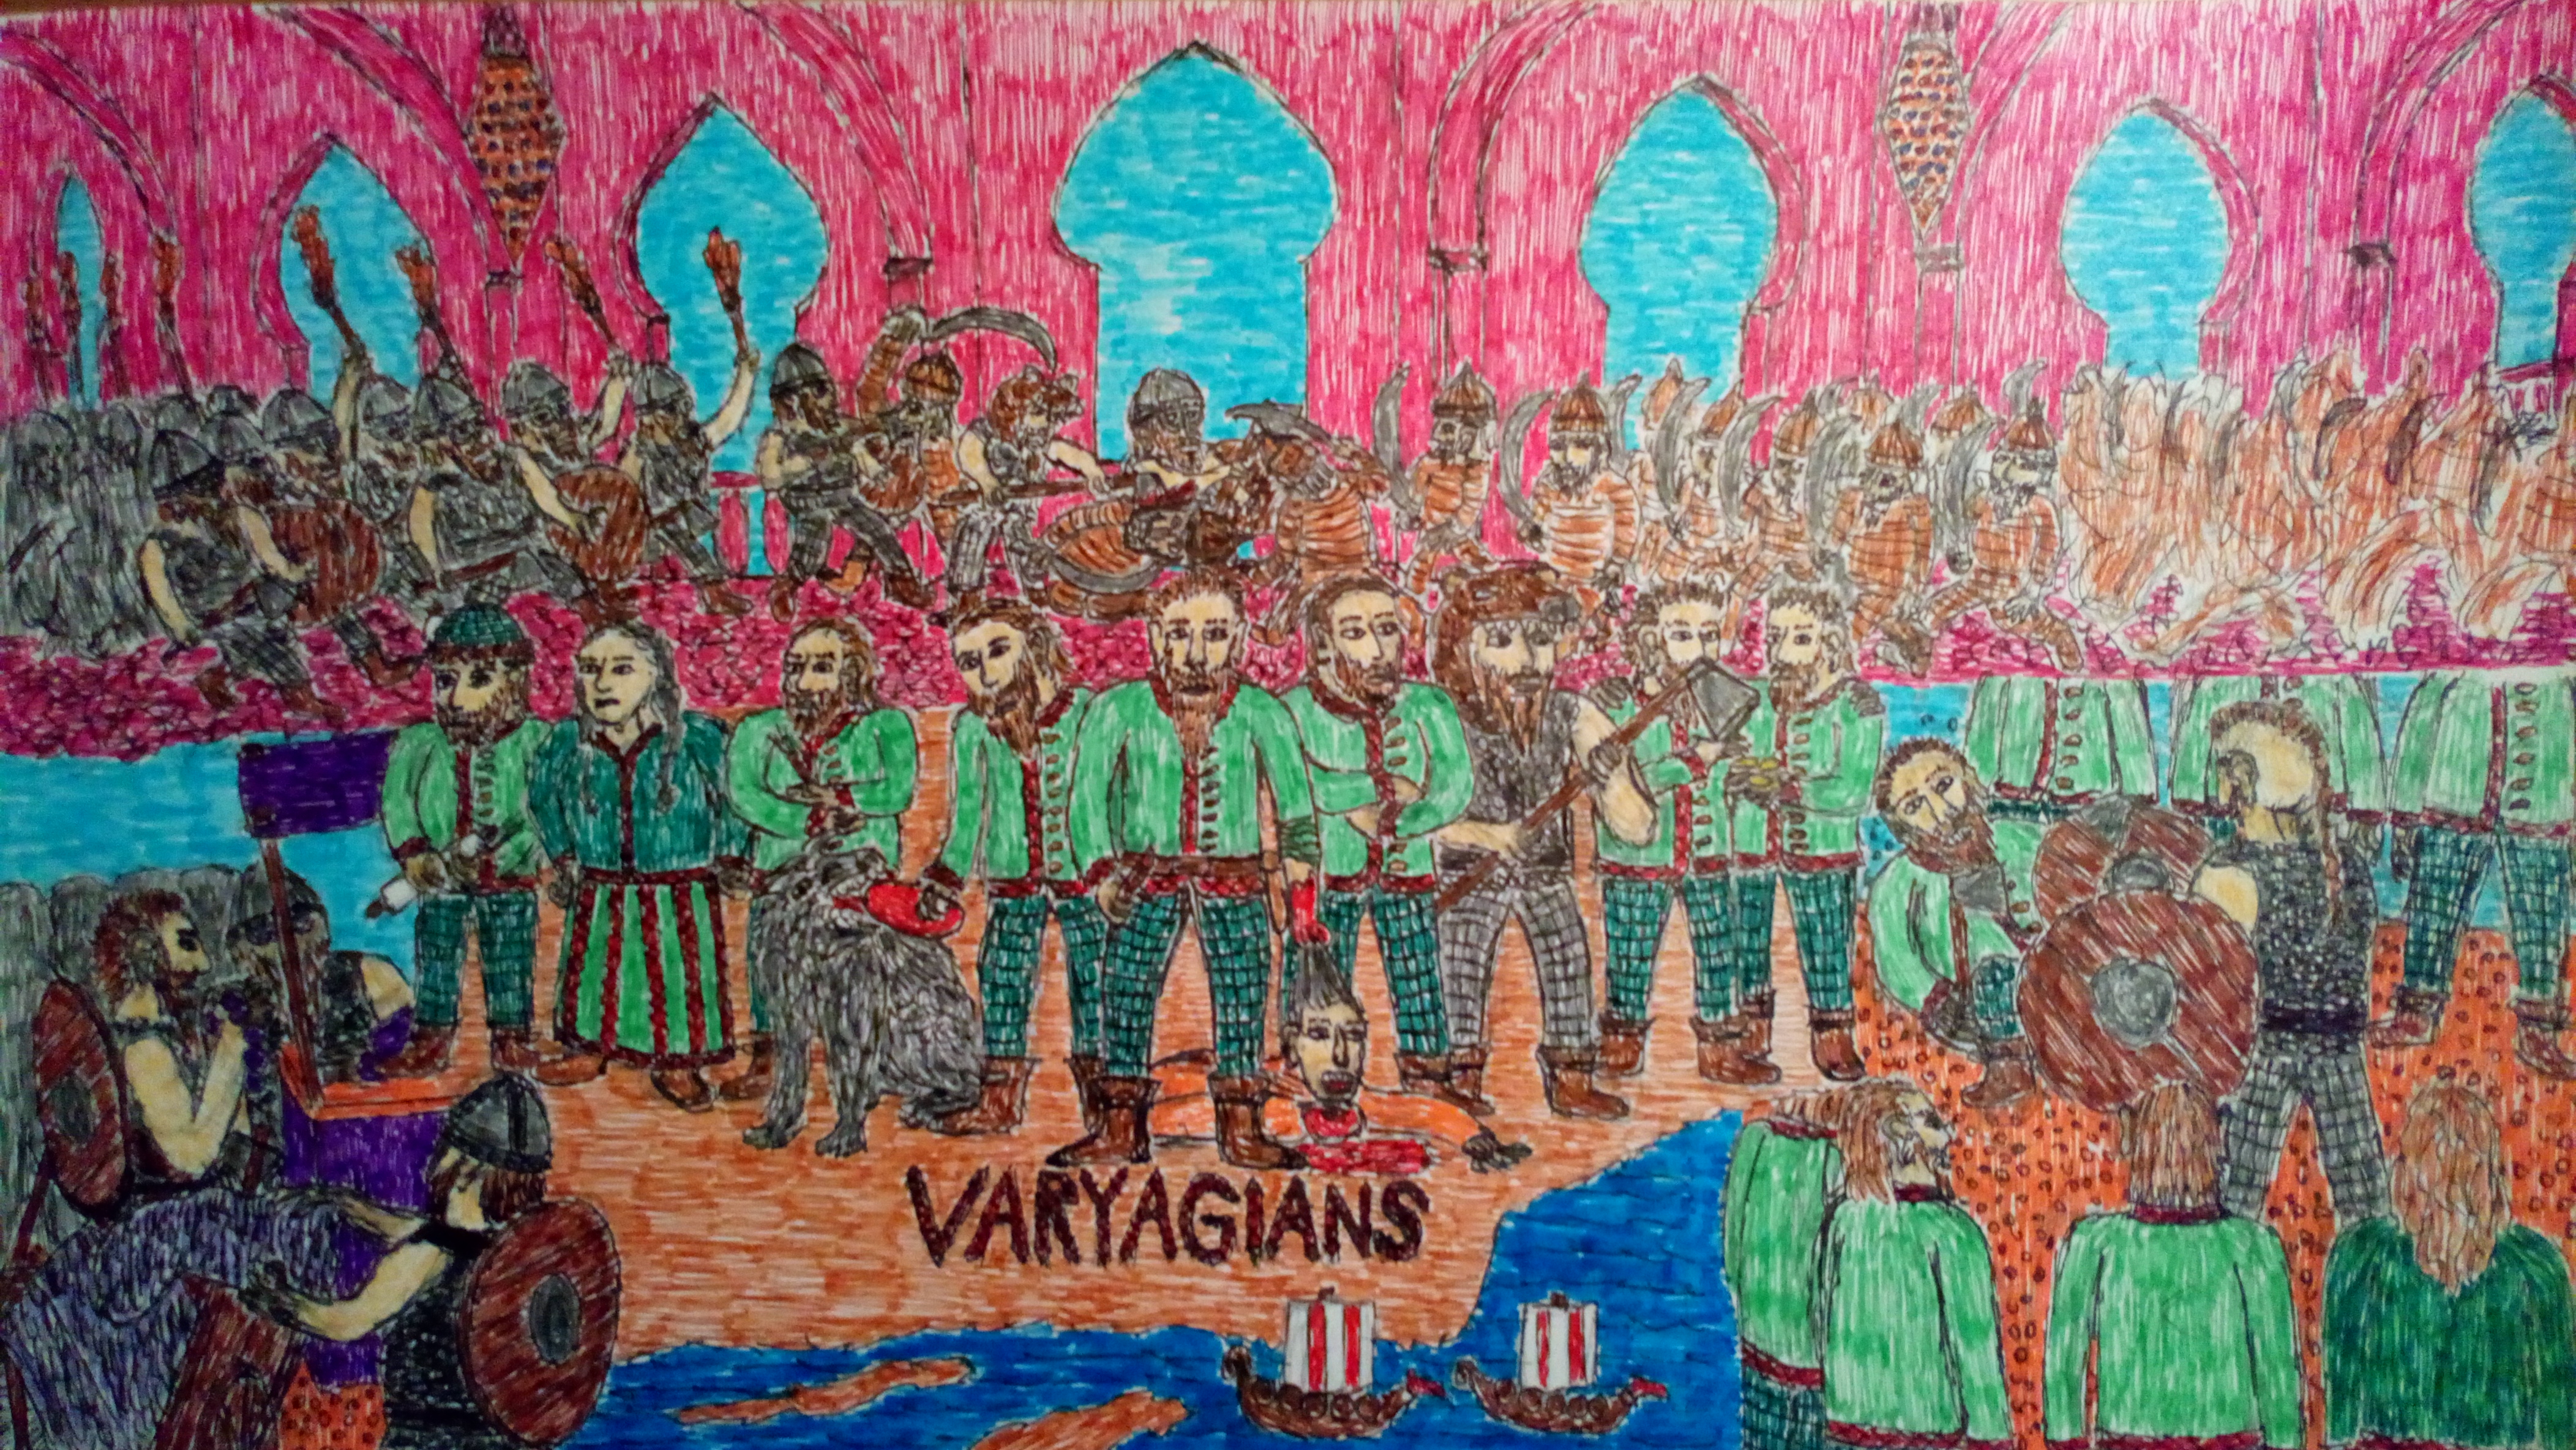 Varyagians by Fredrik Forsmark